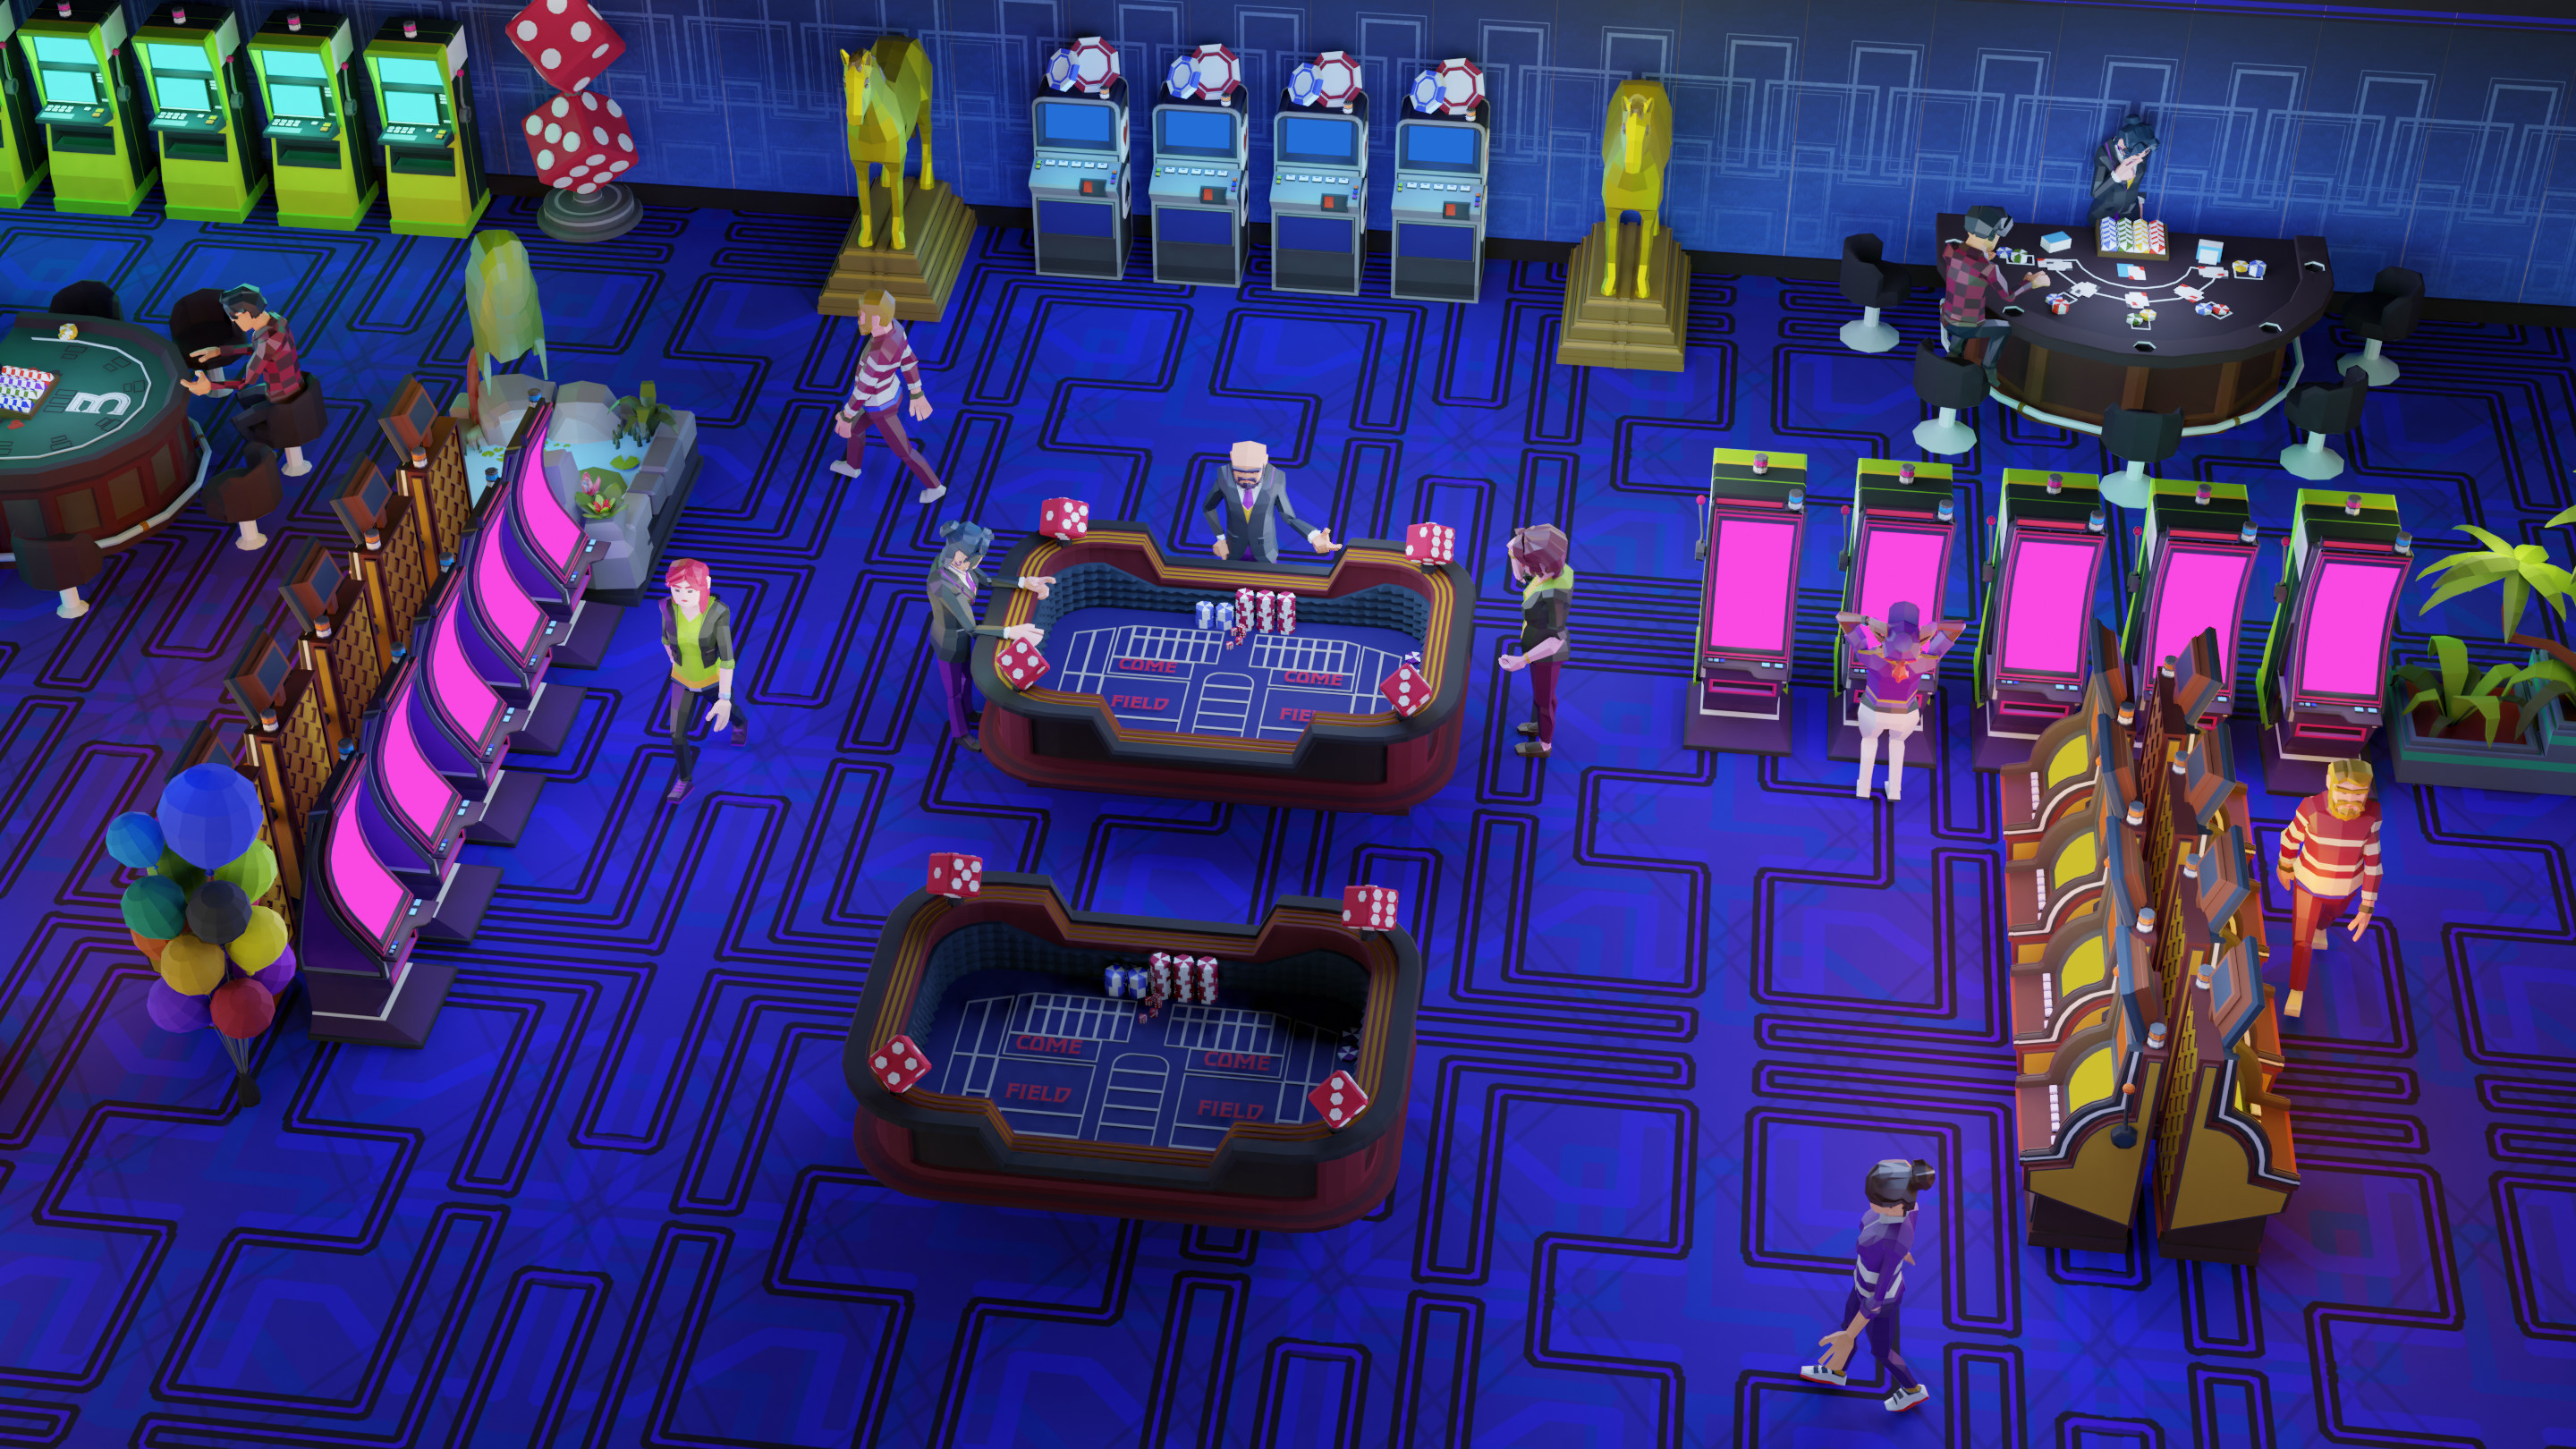 Grand Casino Tycoon screenshot